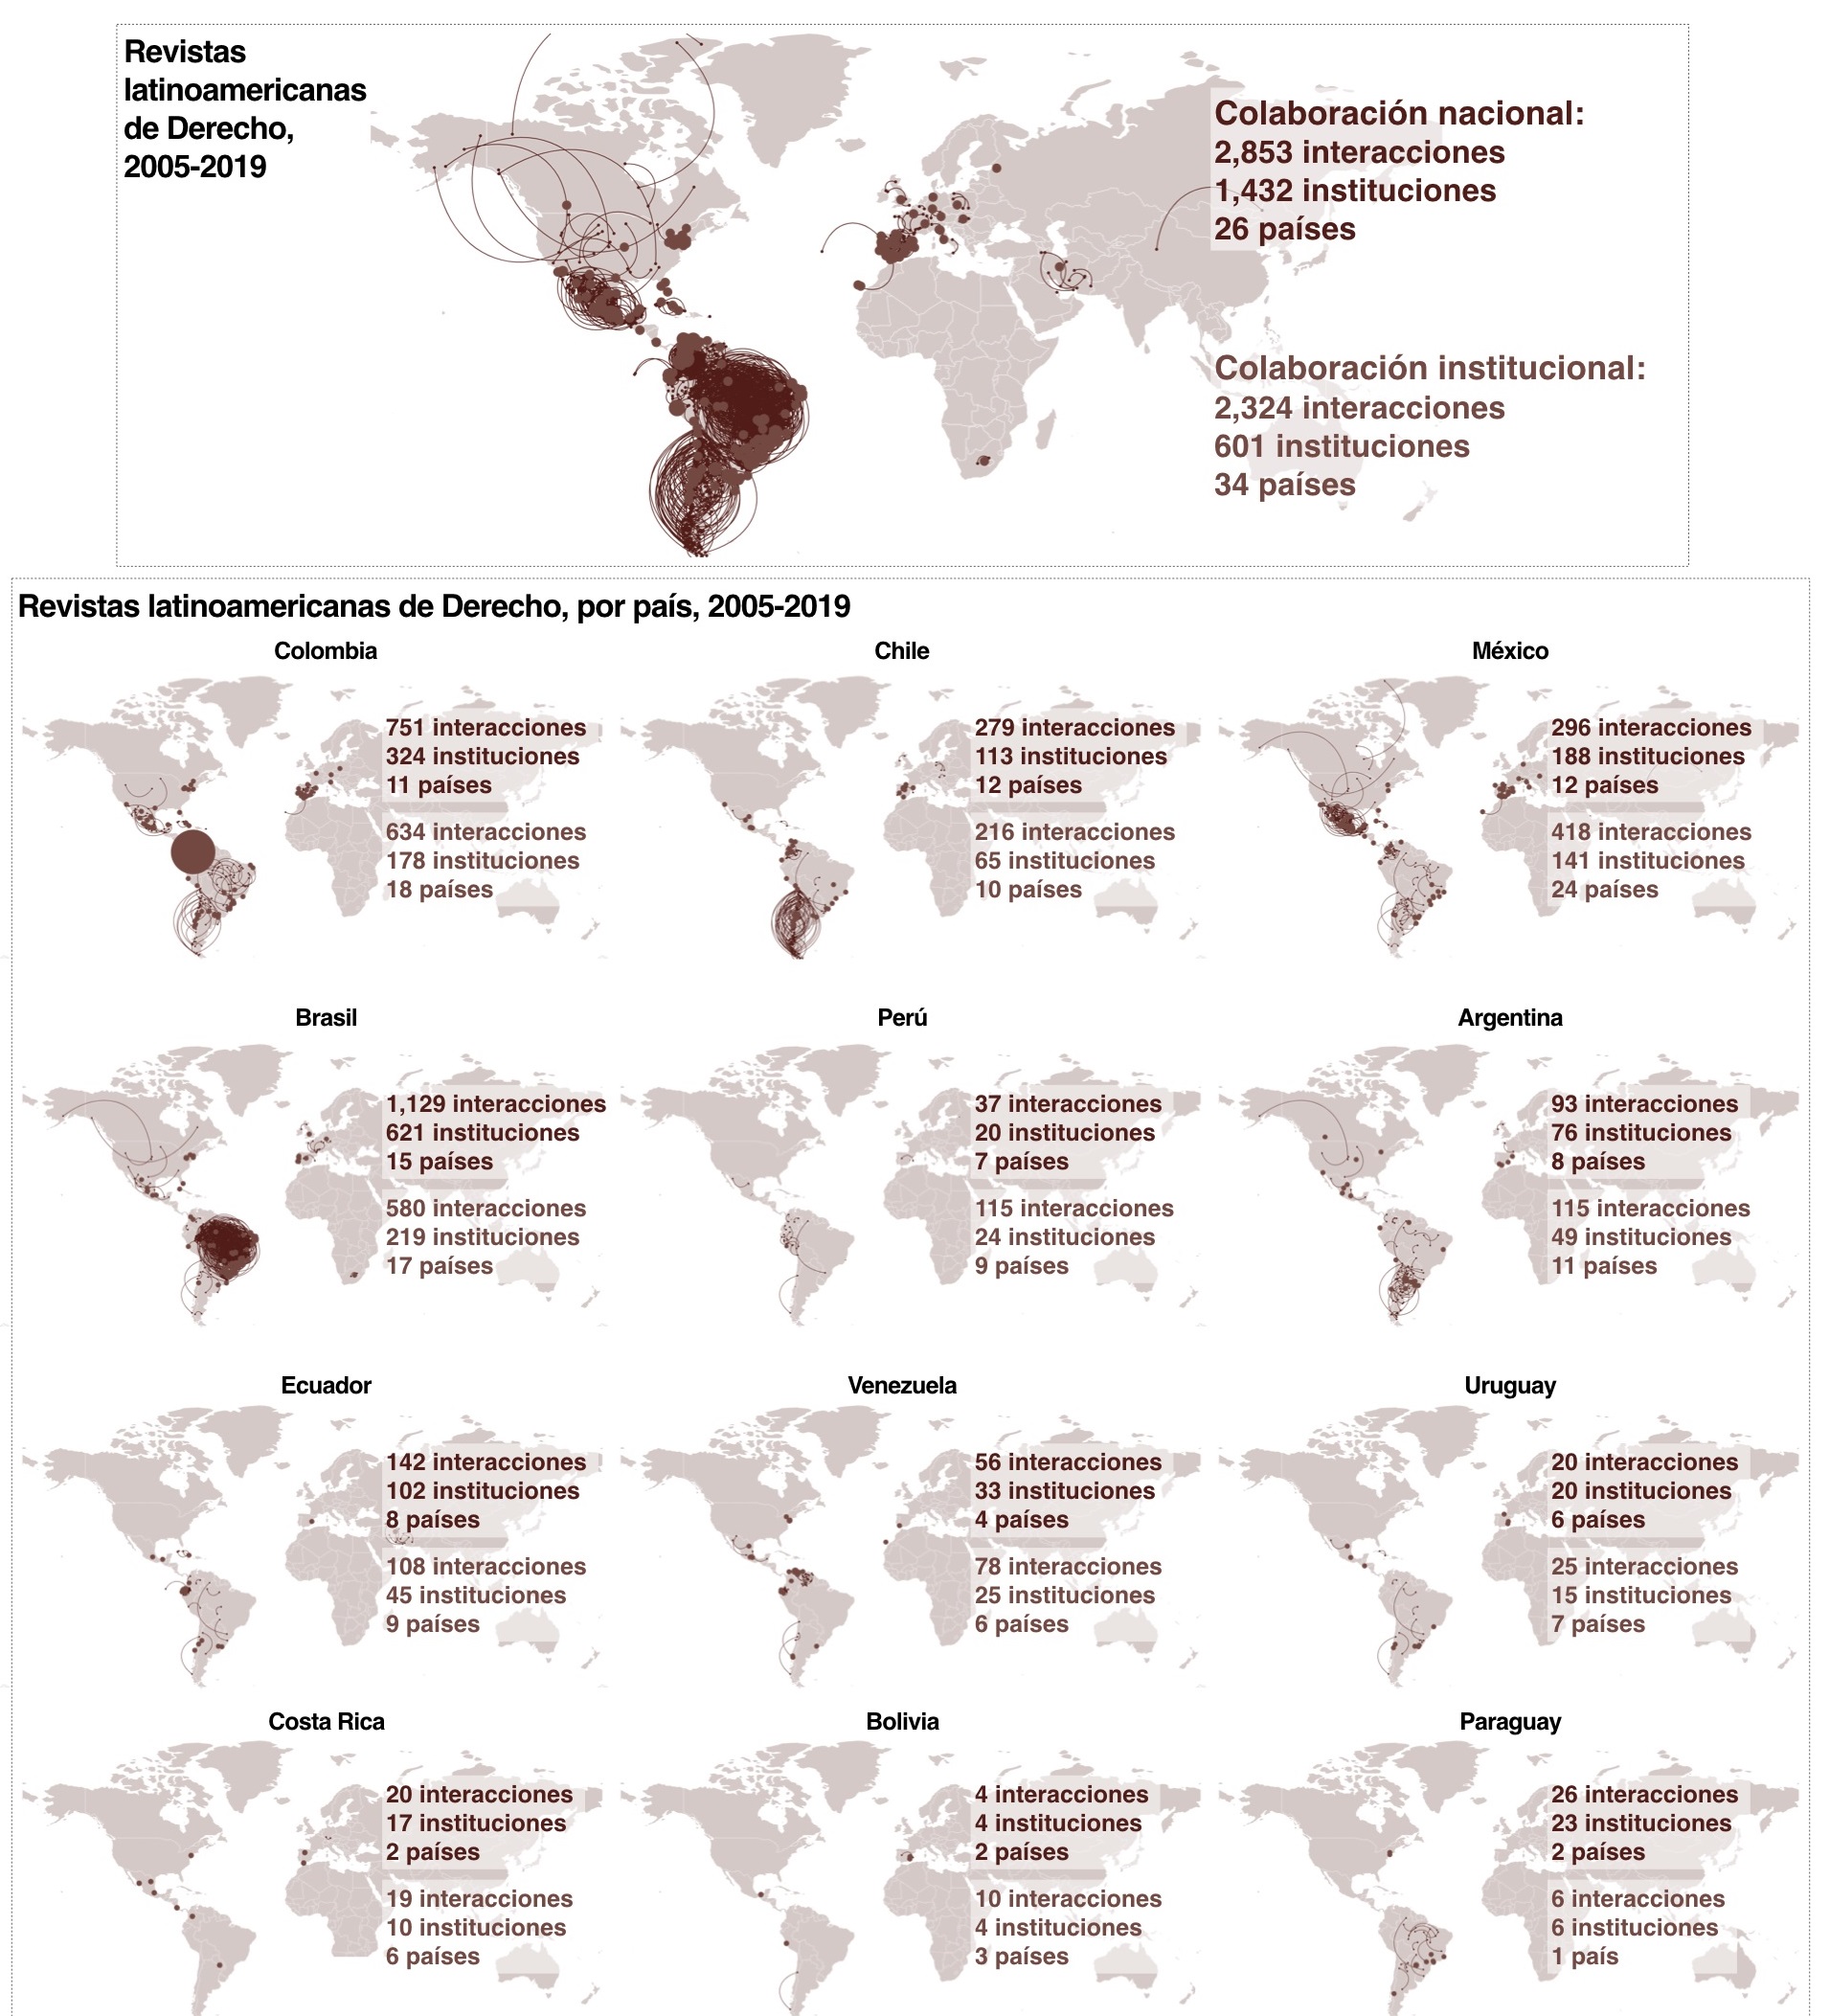 Redes de colaboración nacionales e institucionales en las revistas latinoamericanas de derecho, 2005-2019